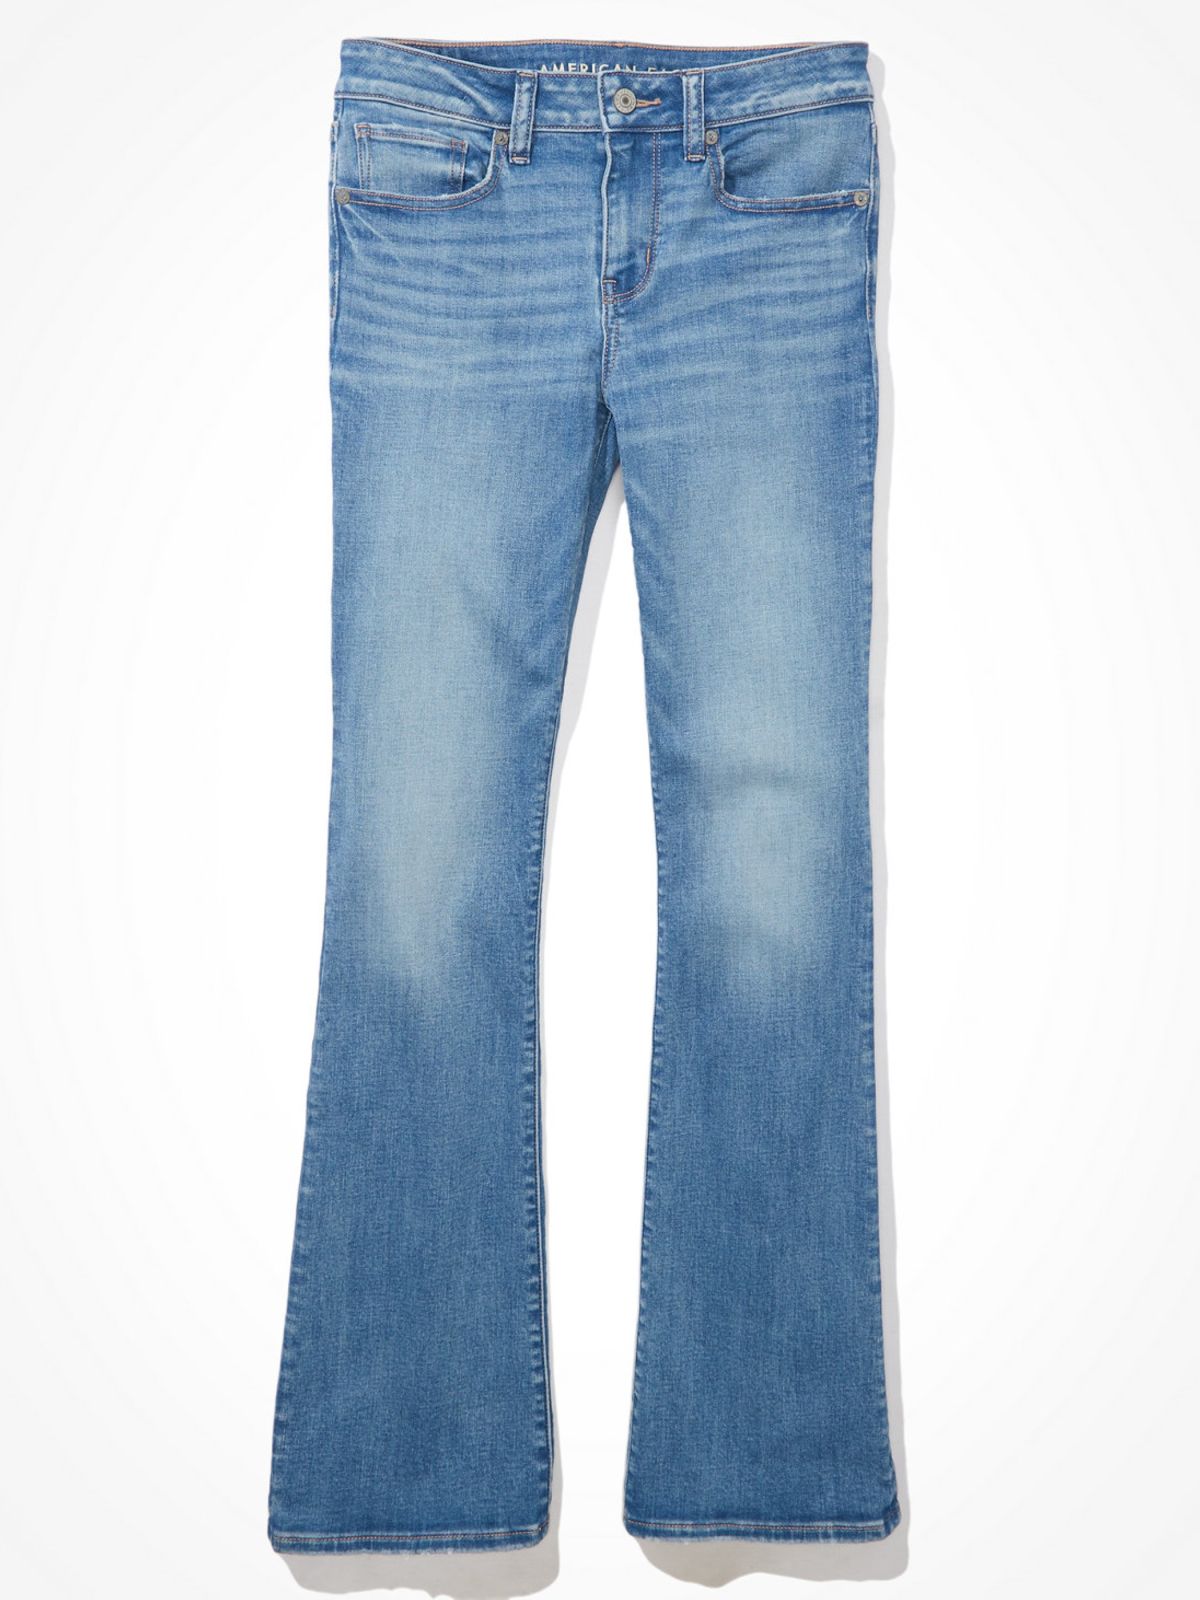  ג'ינס ארוך בגזרה מתרחבת של AMERICAN EAGLE